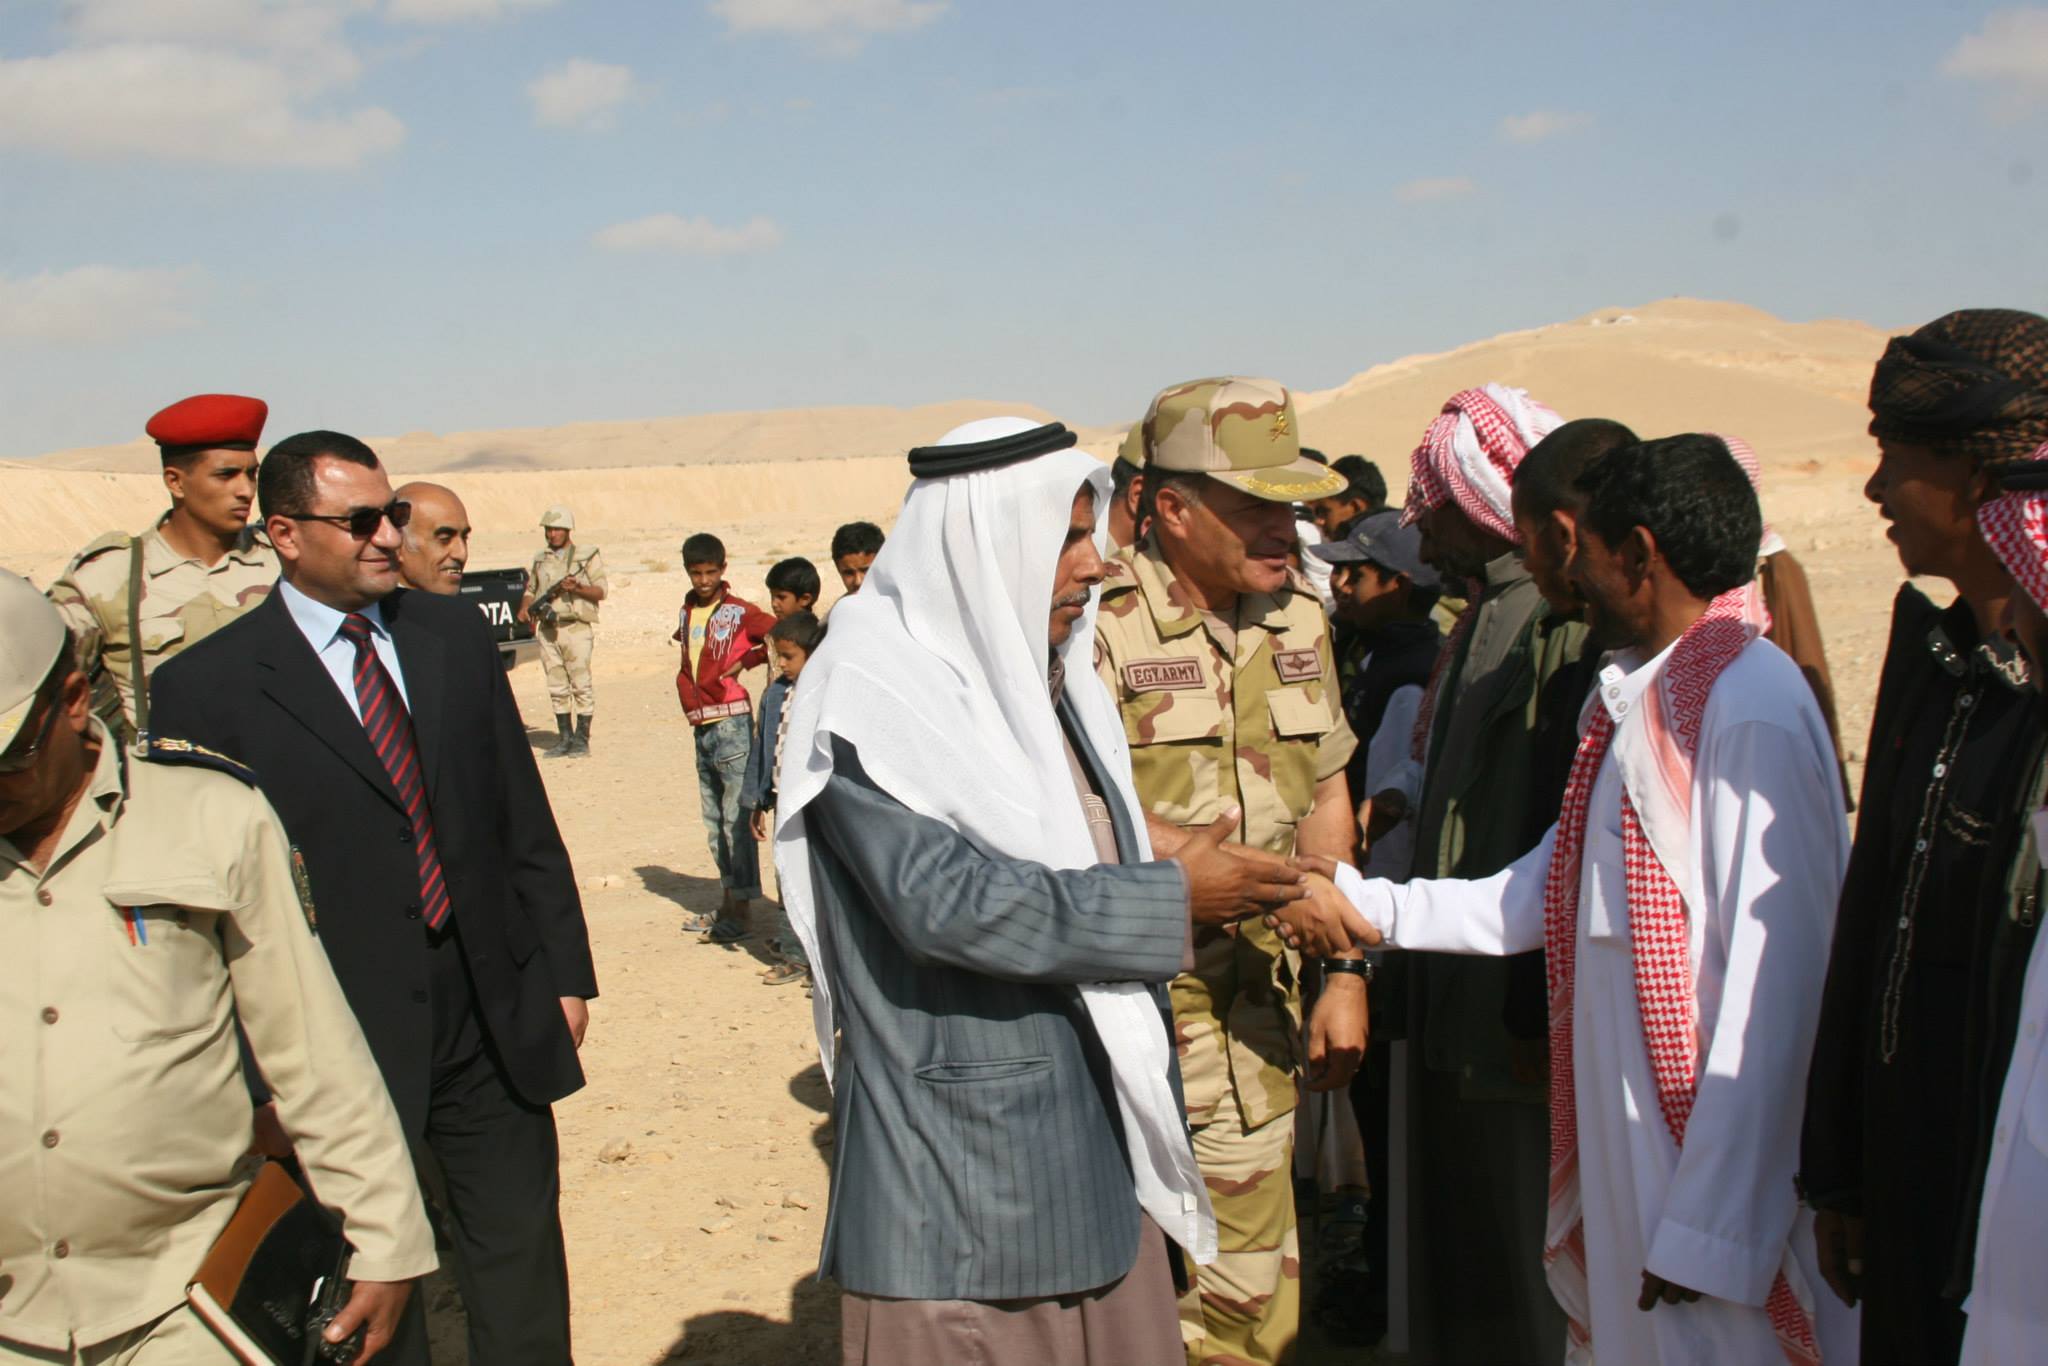   قبائل سيناء تنظم مؤتمرا جماهيرياً لدعم القوات المسلحة في حربها ضد الإرهاب وتنمية سيناء